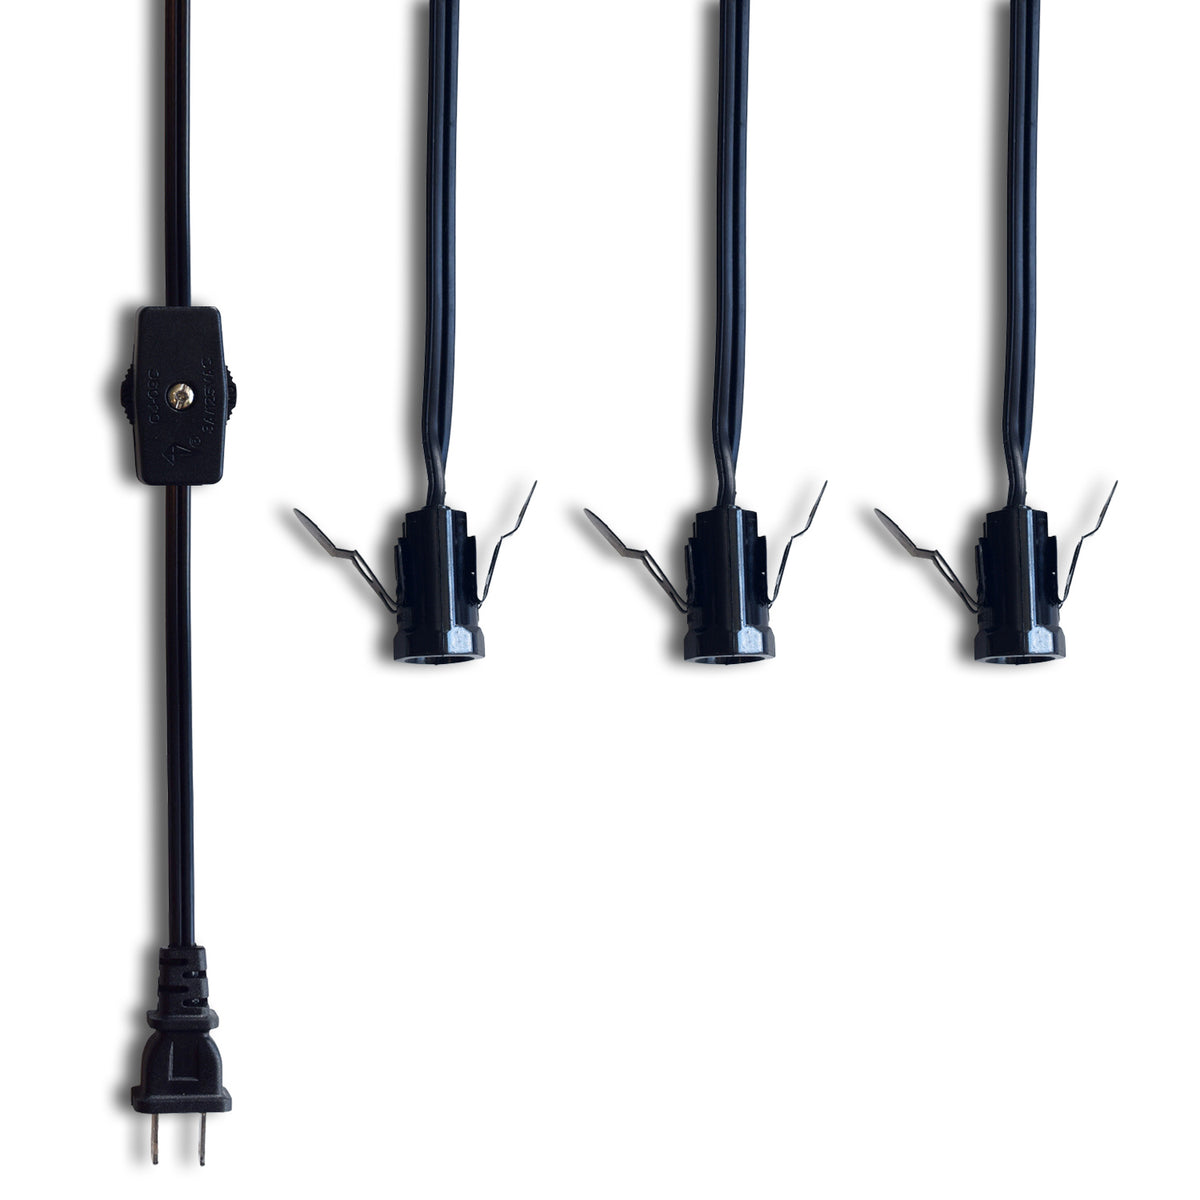 Triple Socket Black Pendant Light Lamp Cord for Star Lanterns, Switch, E12, 19 Ft - Electrical Swag Light Kit